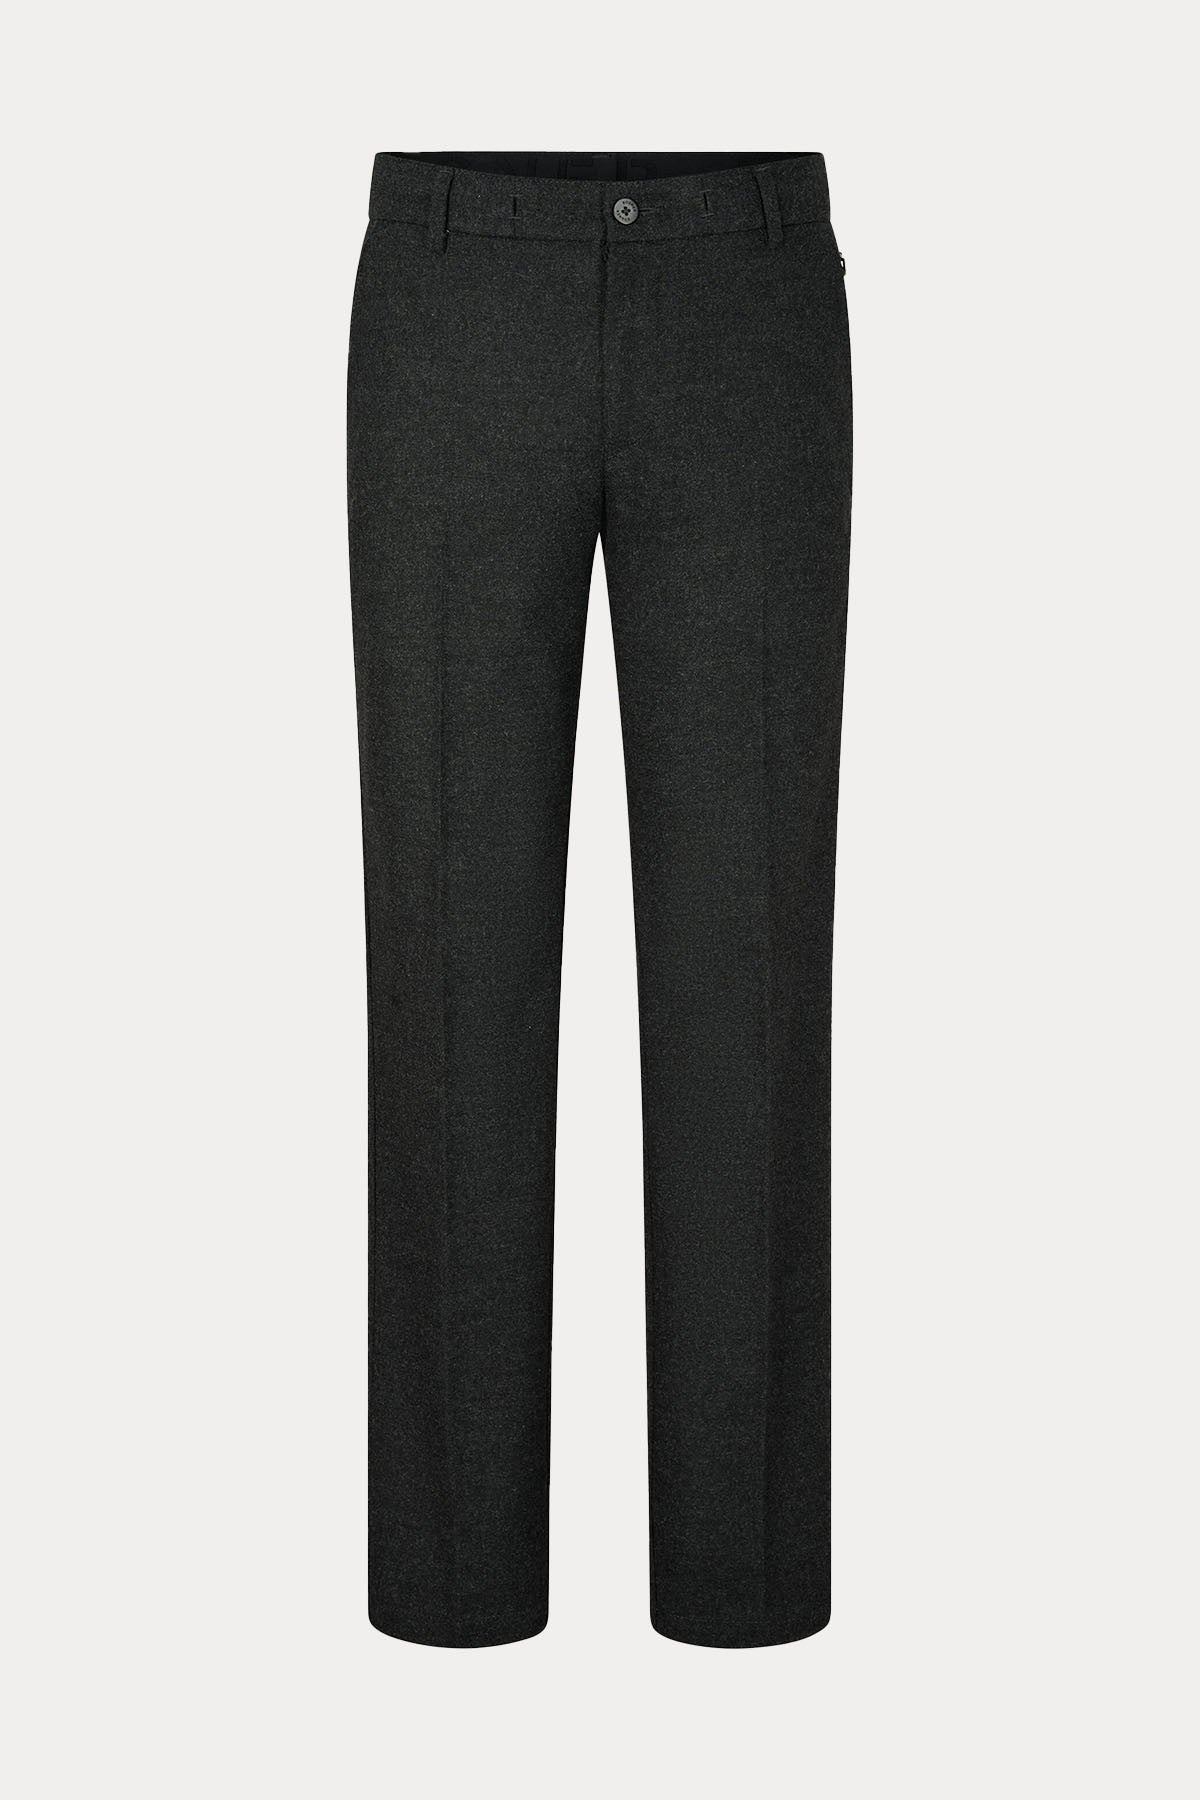 Bogner Riley Prime Fit Yün Pantolon-Libas Trendy Fashion Store